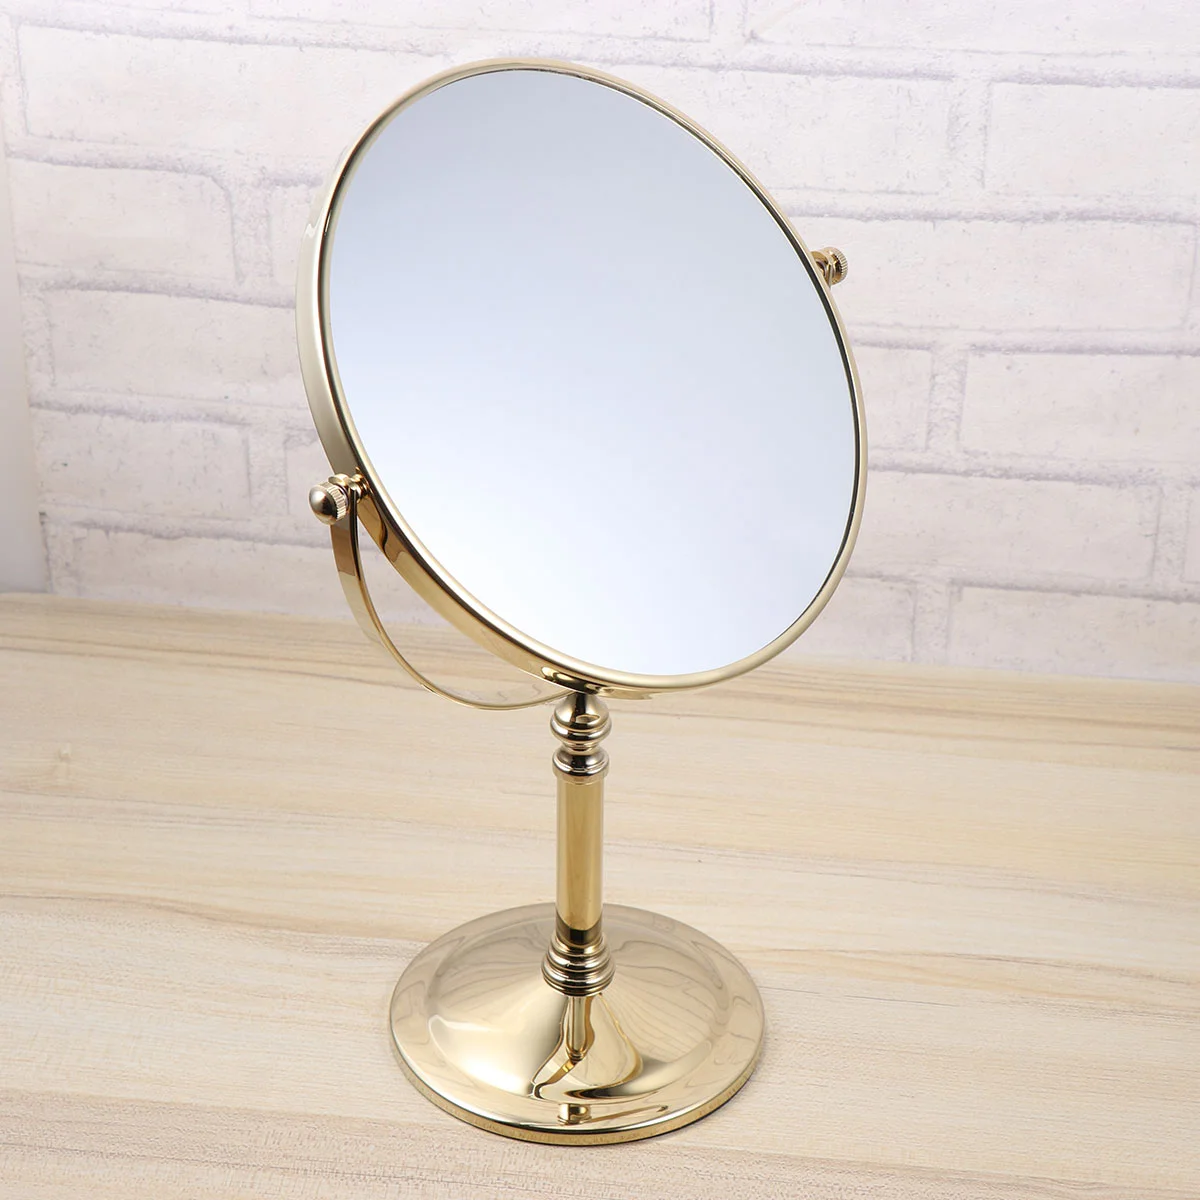 

Увеличительное стекло, Двойное боковое зеркало, европейский стиль, туалетный столик для макияжа